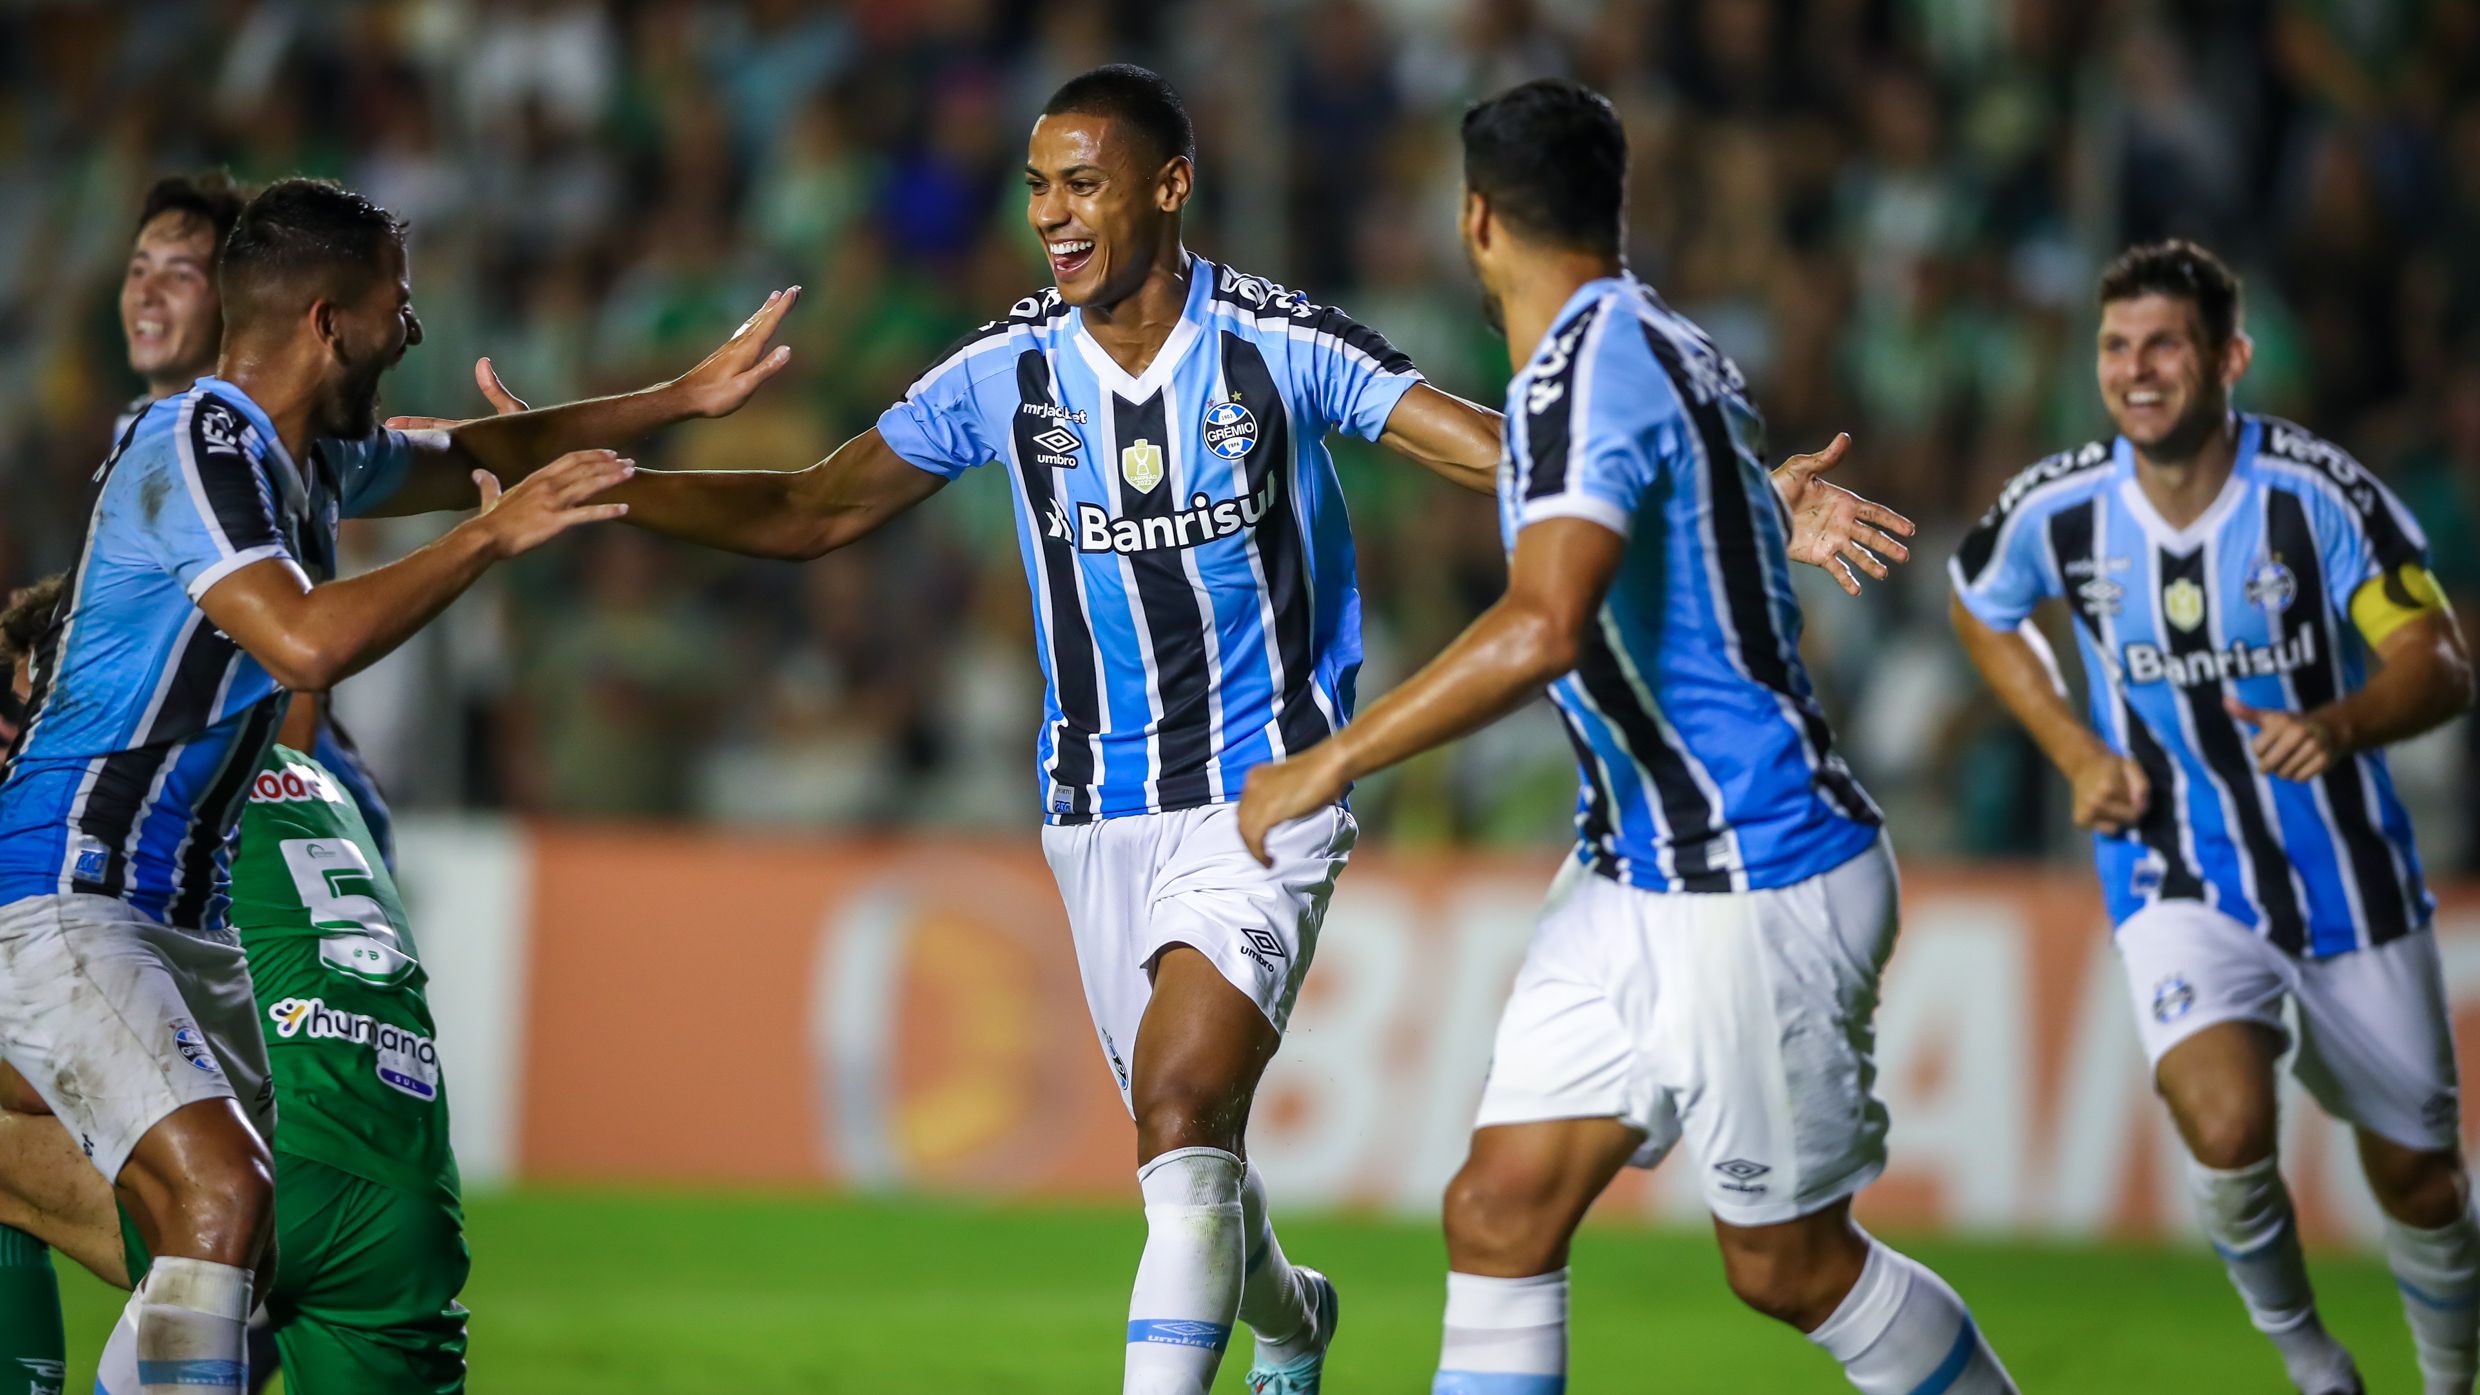 Grêmio x Ituano: A Clash of Titans in Brazilian Football